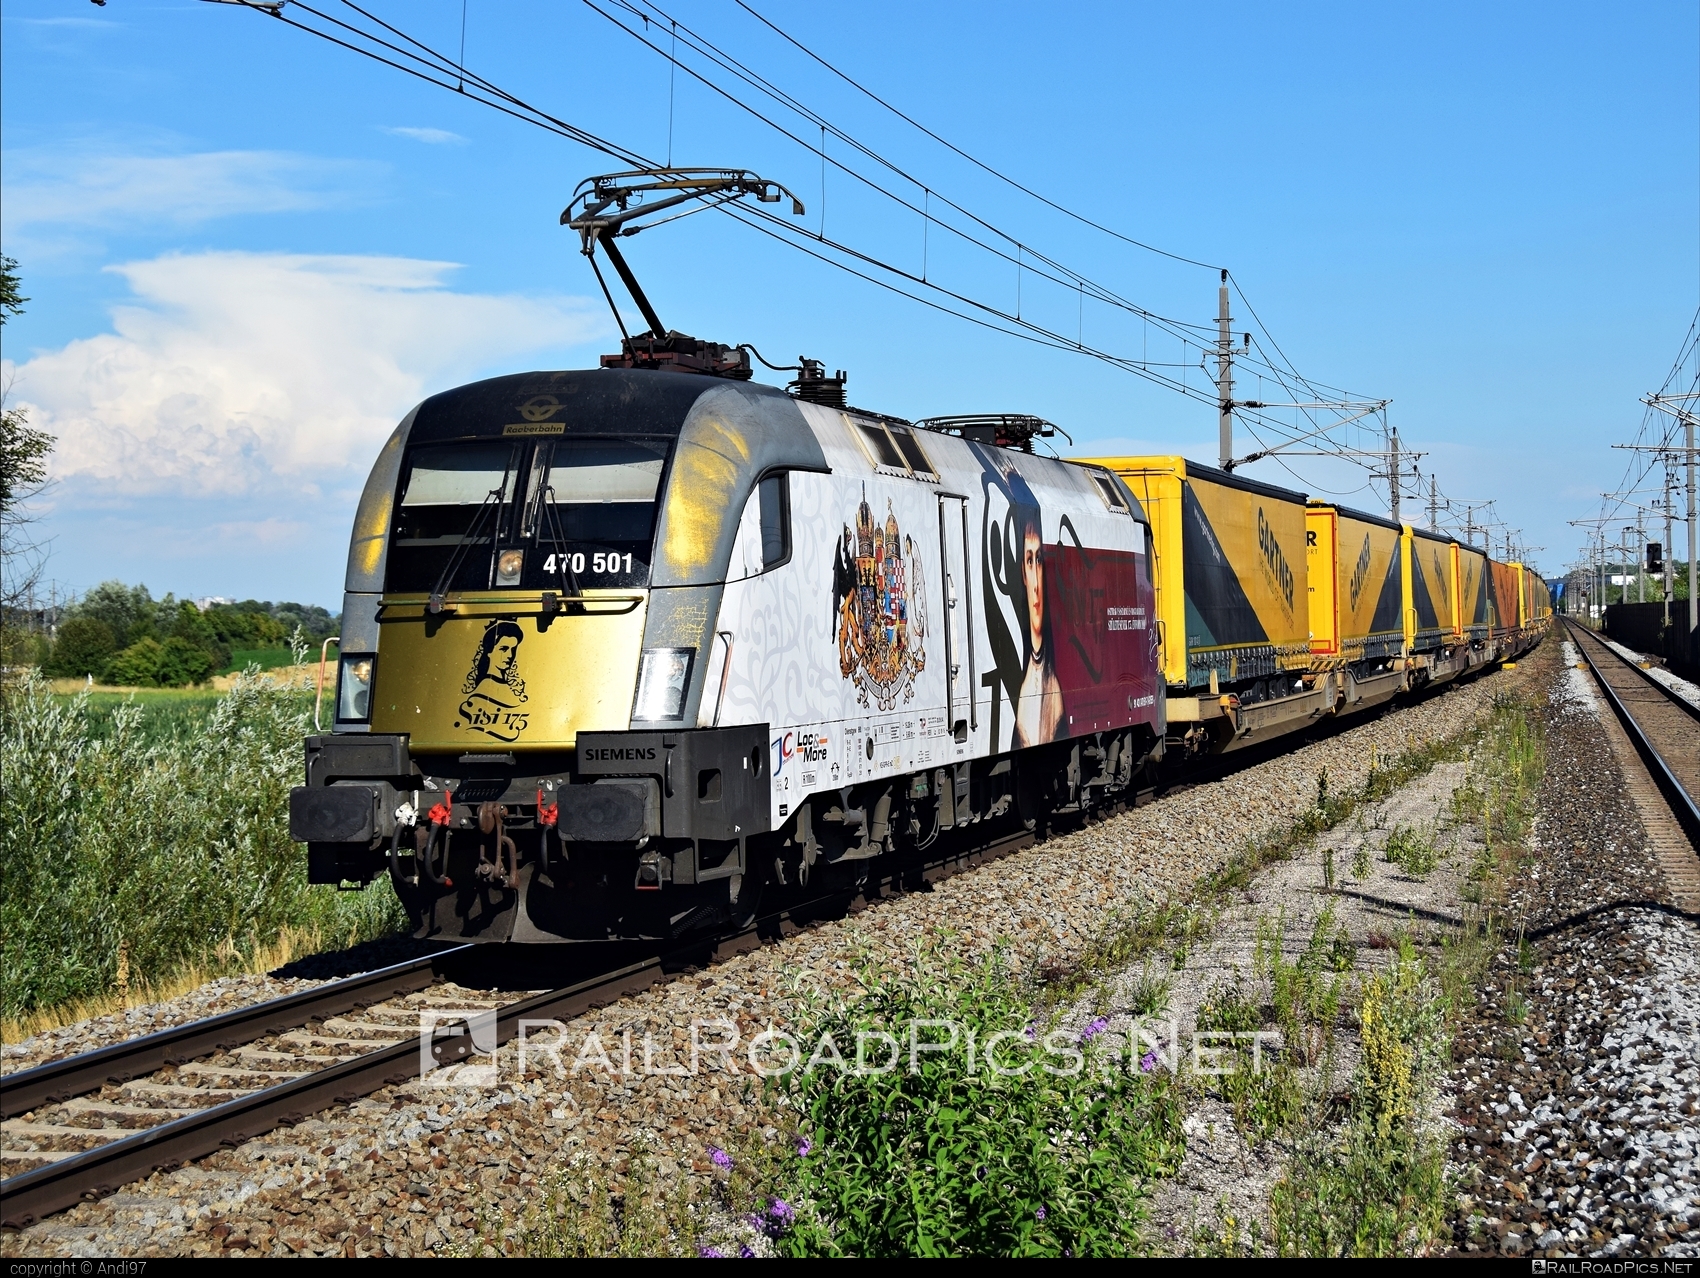 Siemens ES 64 U2 - 470 501 operated by GYSEV - Györ-Sopron-Ebenfurti Vasut Részvénytarsasag #es64 #es64u2 #eurosprinter #flatwagon #gartner #gyorsopronebenfurtivasutreszvenytarsasag #gysev #semitrailer #siemens #siemensEs64 #siemensEs64u2 #siemenstaurus #taurus #tauruslocomotive